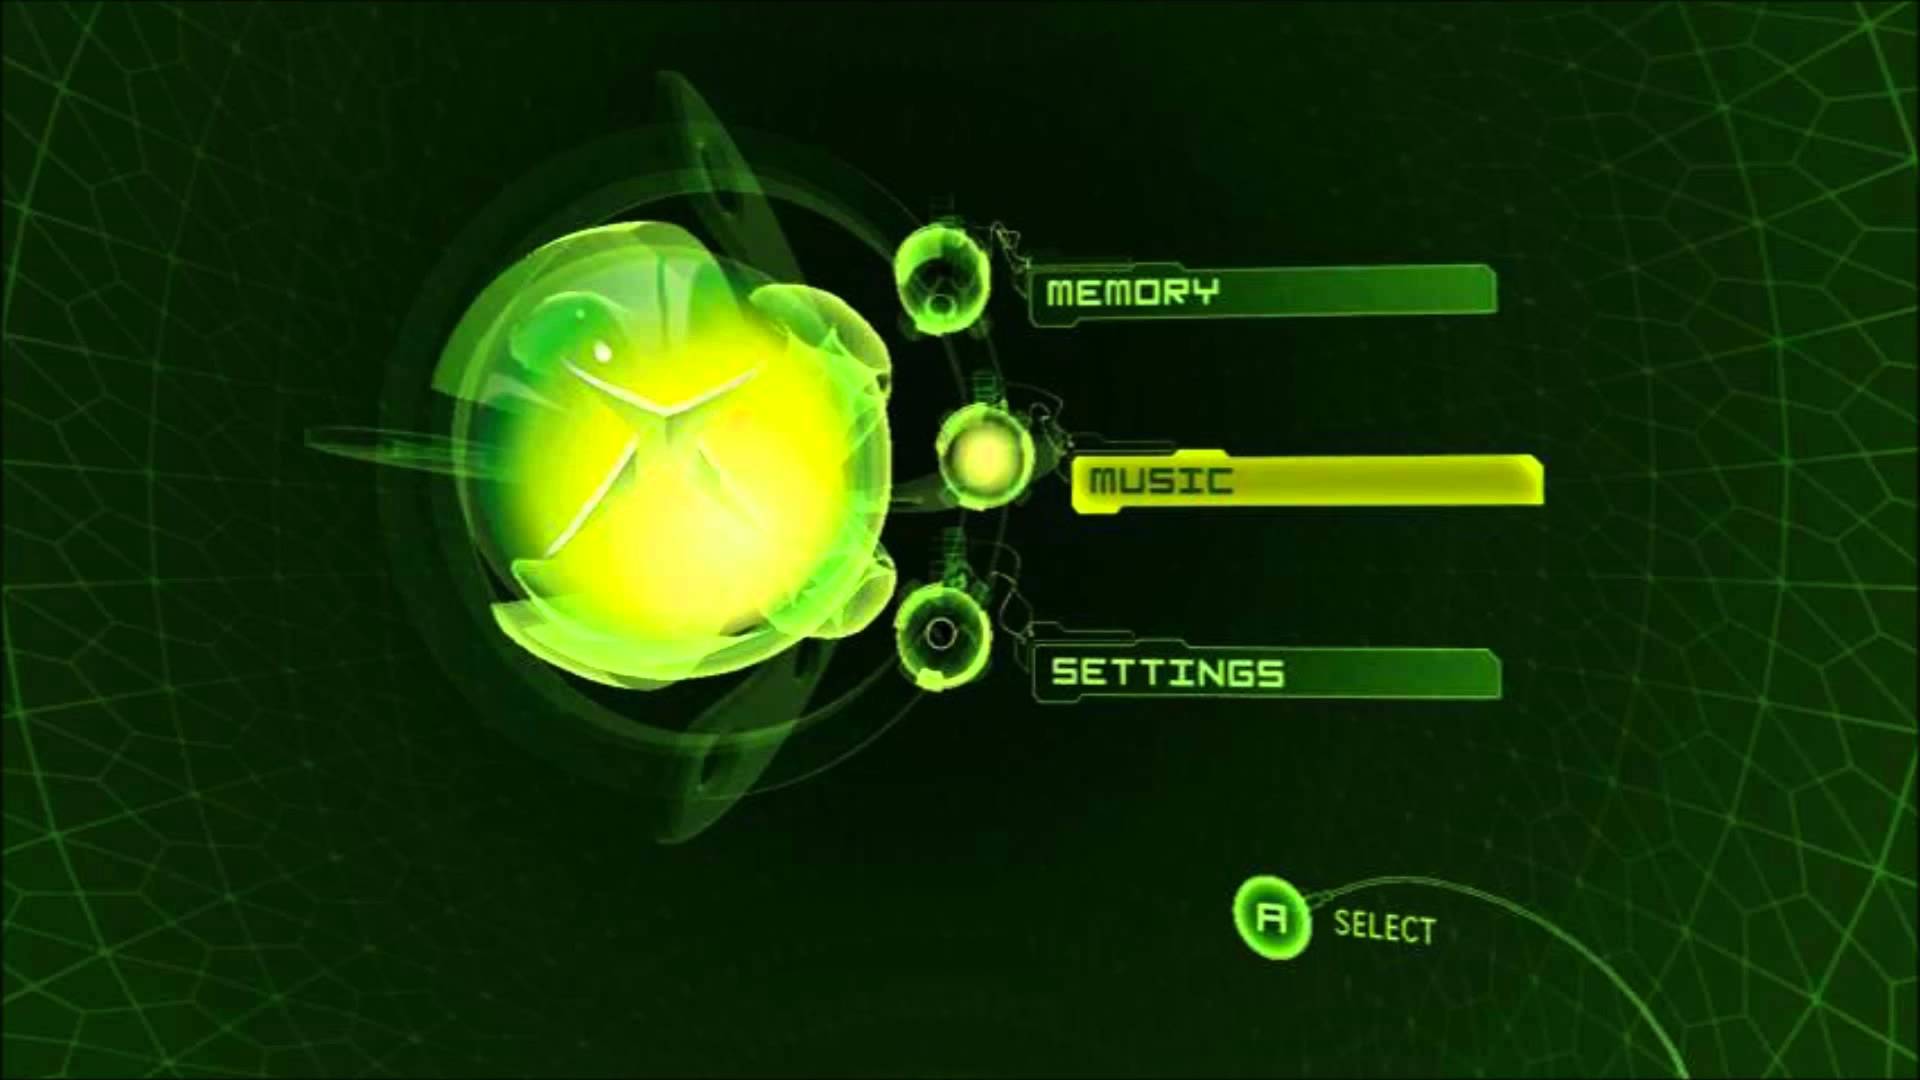 Original Xbox Dashbard